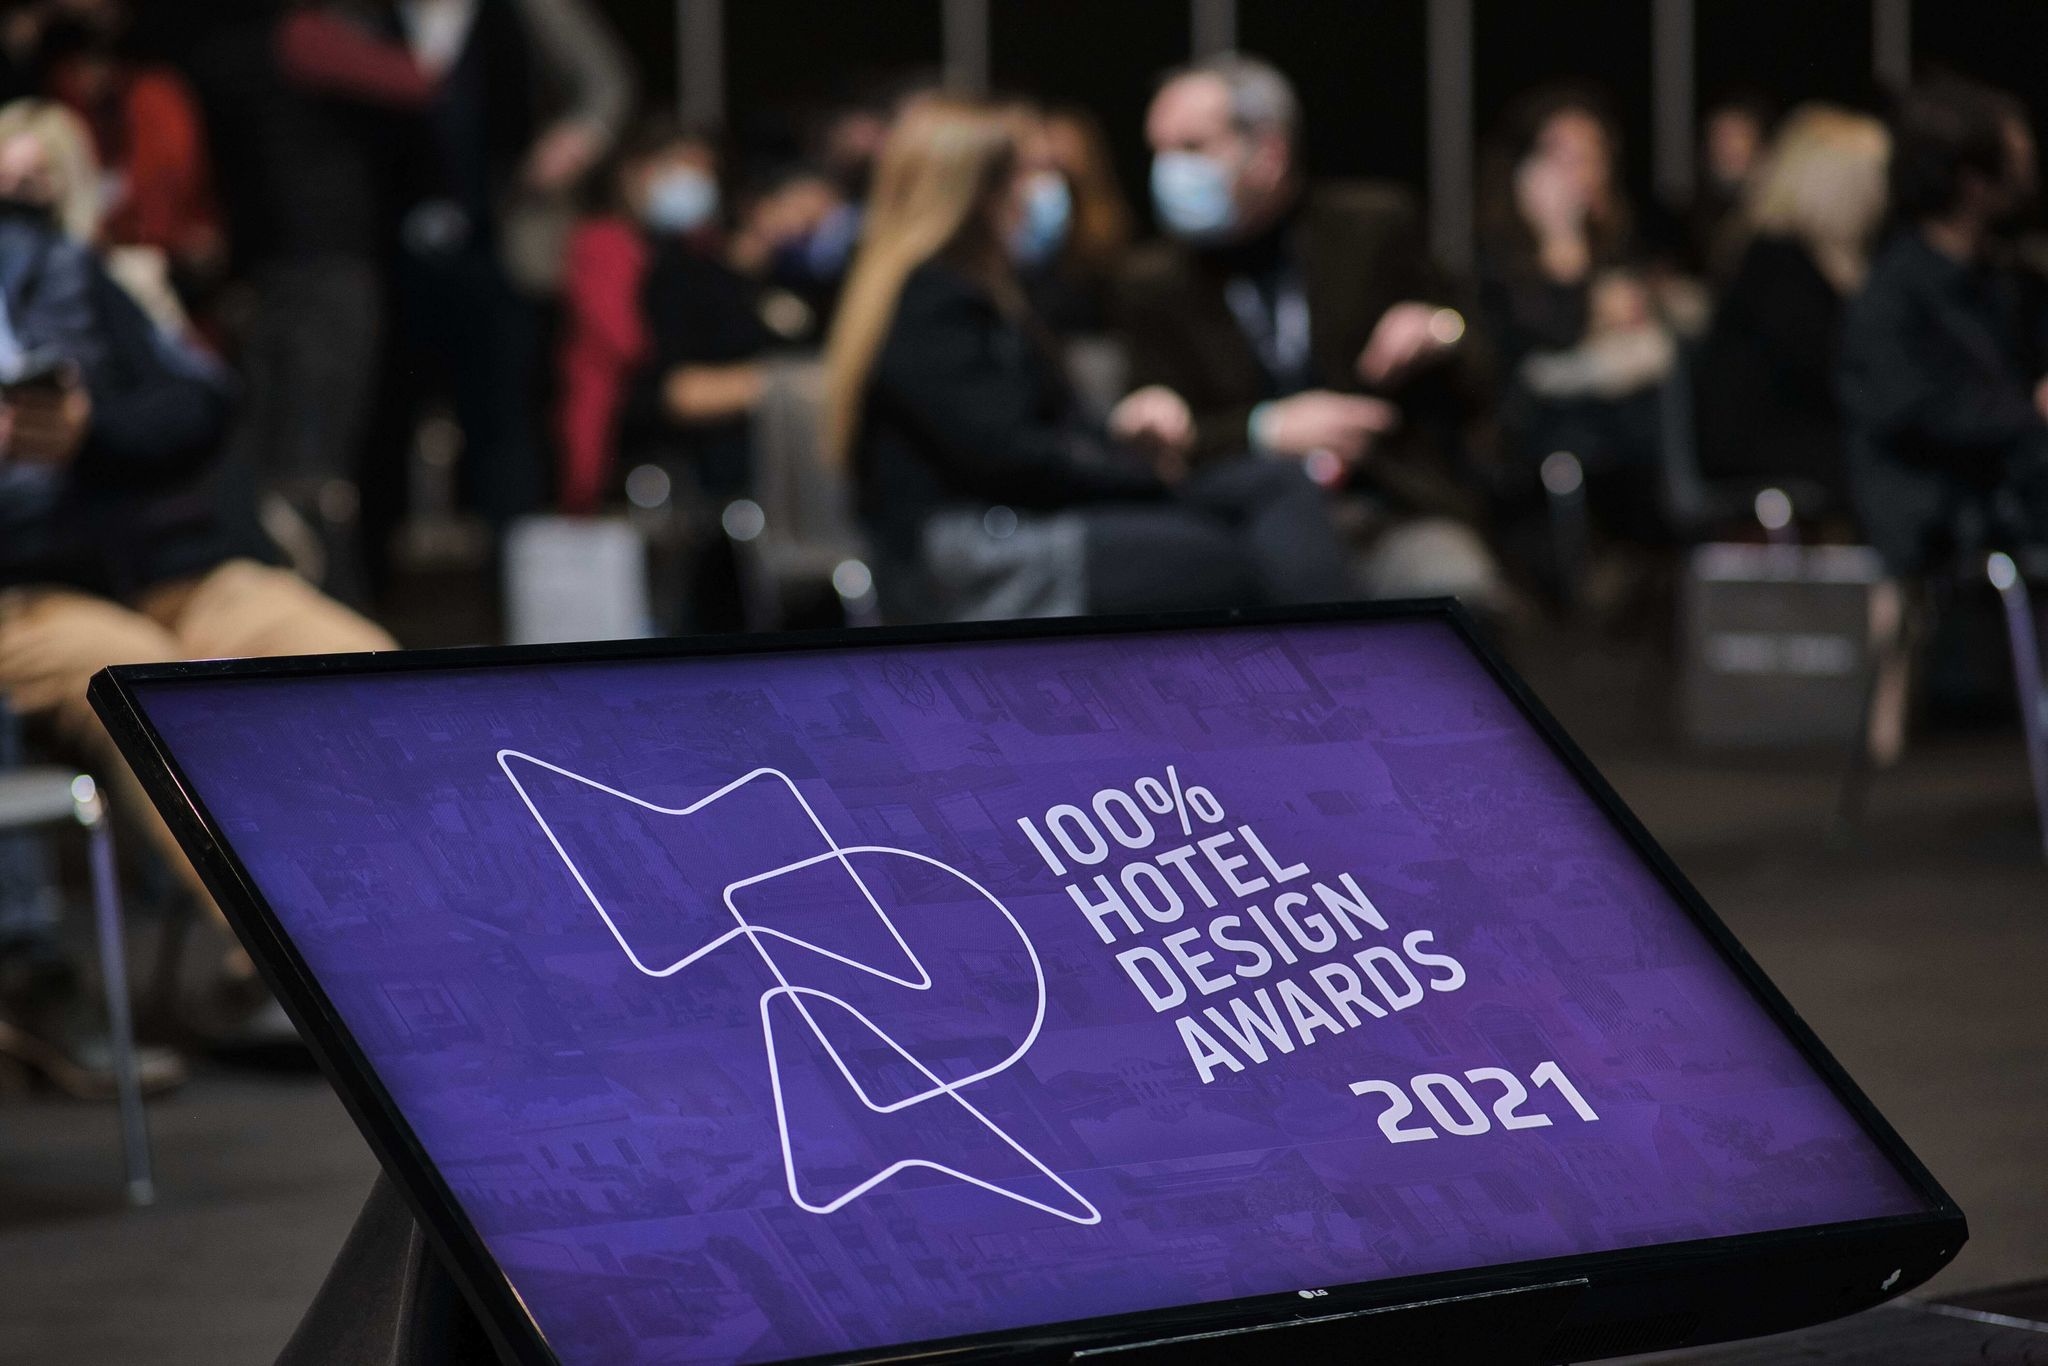 Τα 11 Ξενοδοχεία που διακρίθηκαν στα 100% Hotel Design Awards 2021 και τα Highlights της βραδιάς